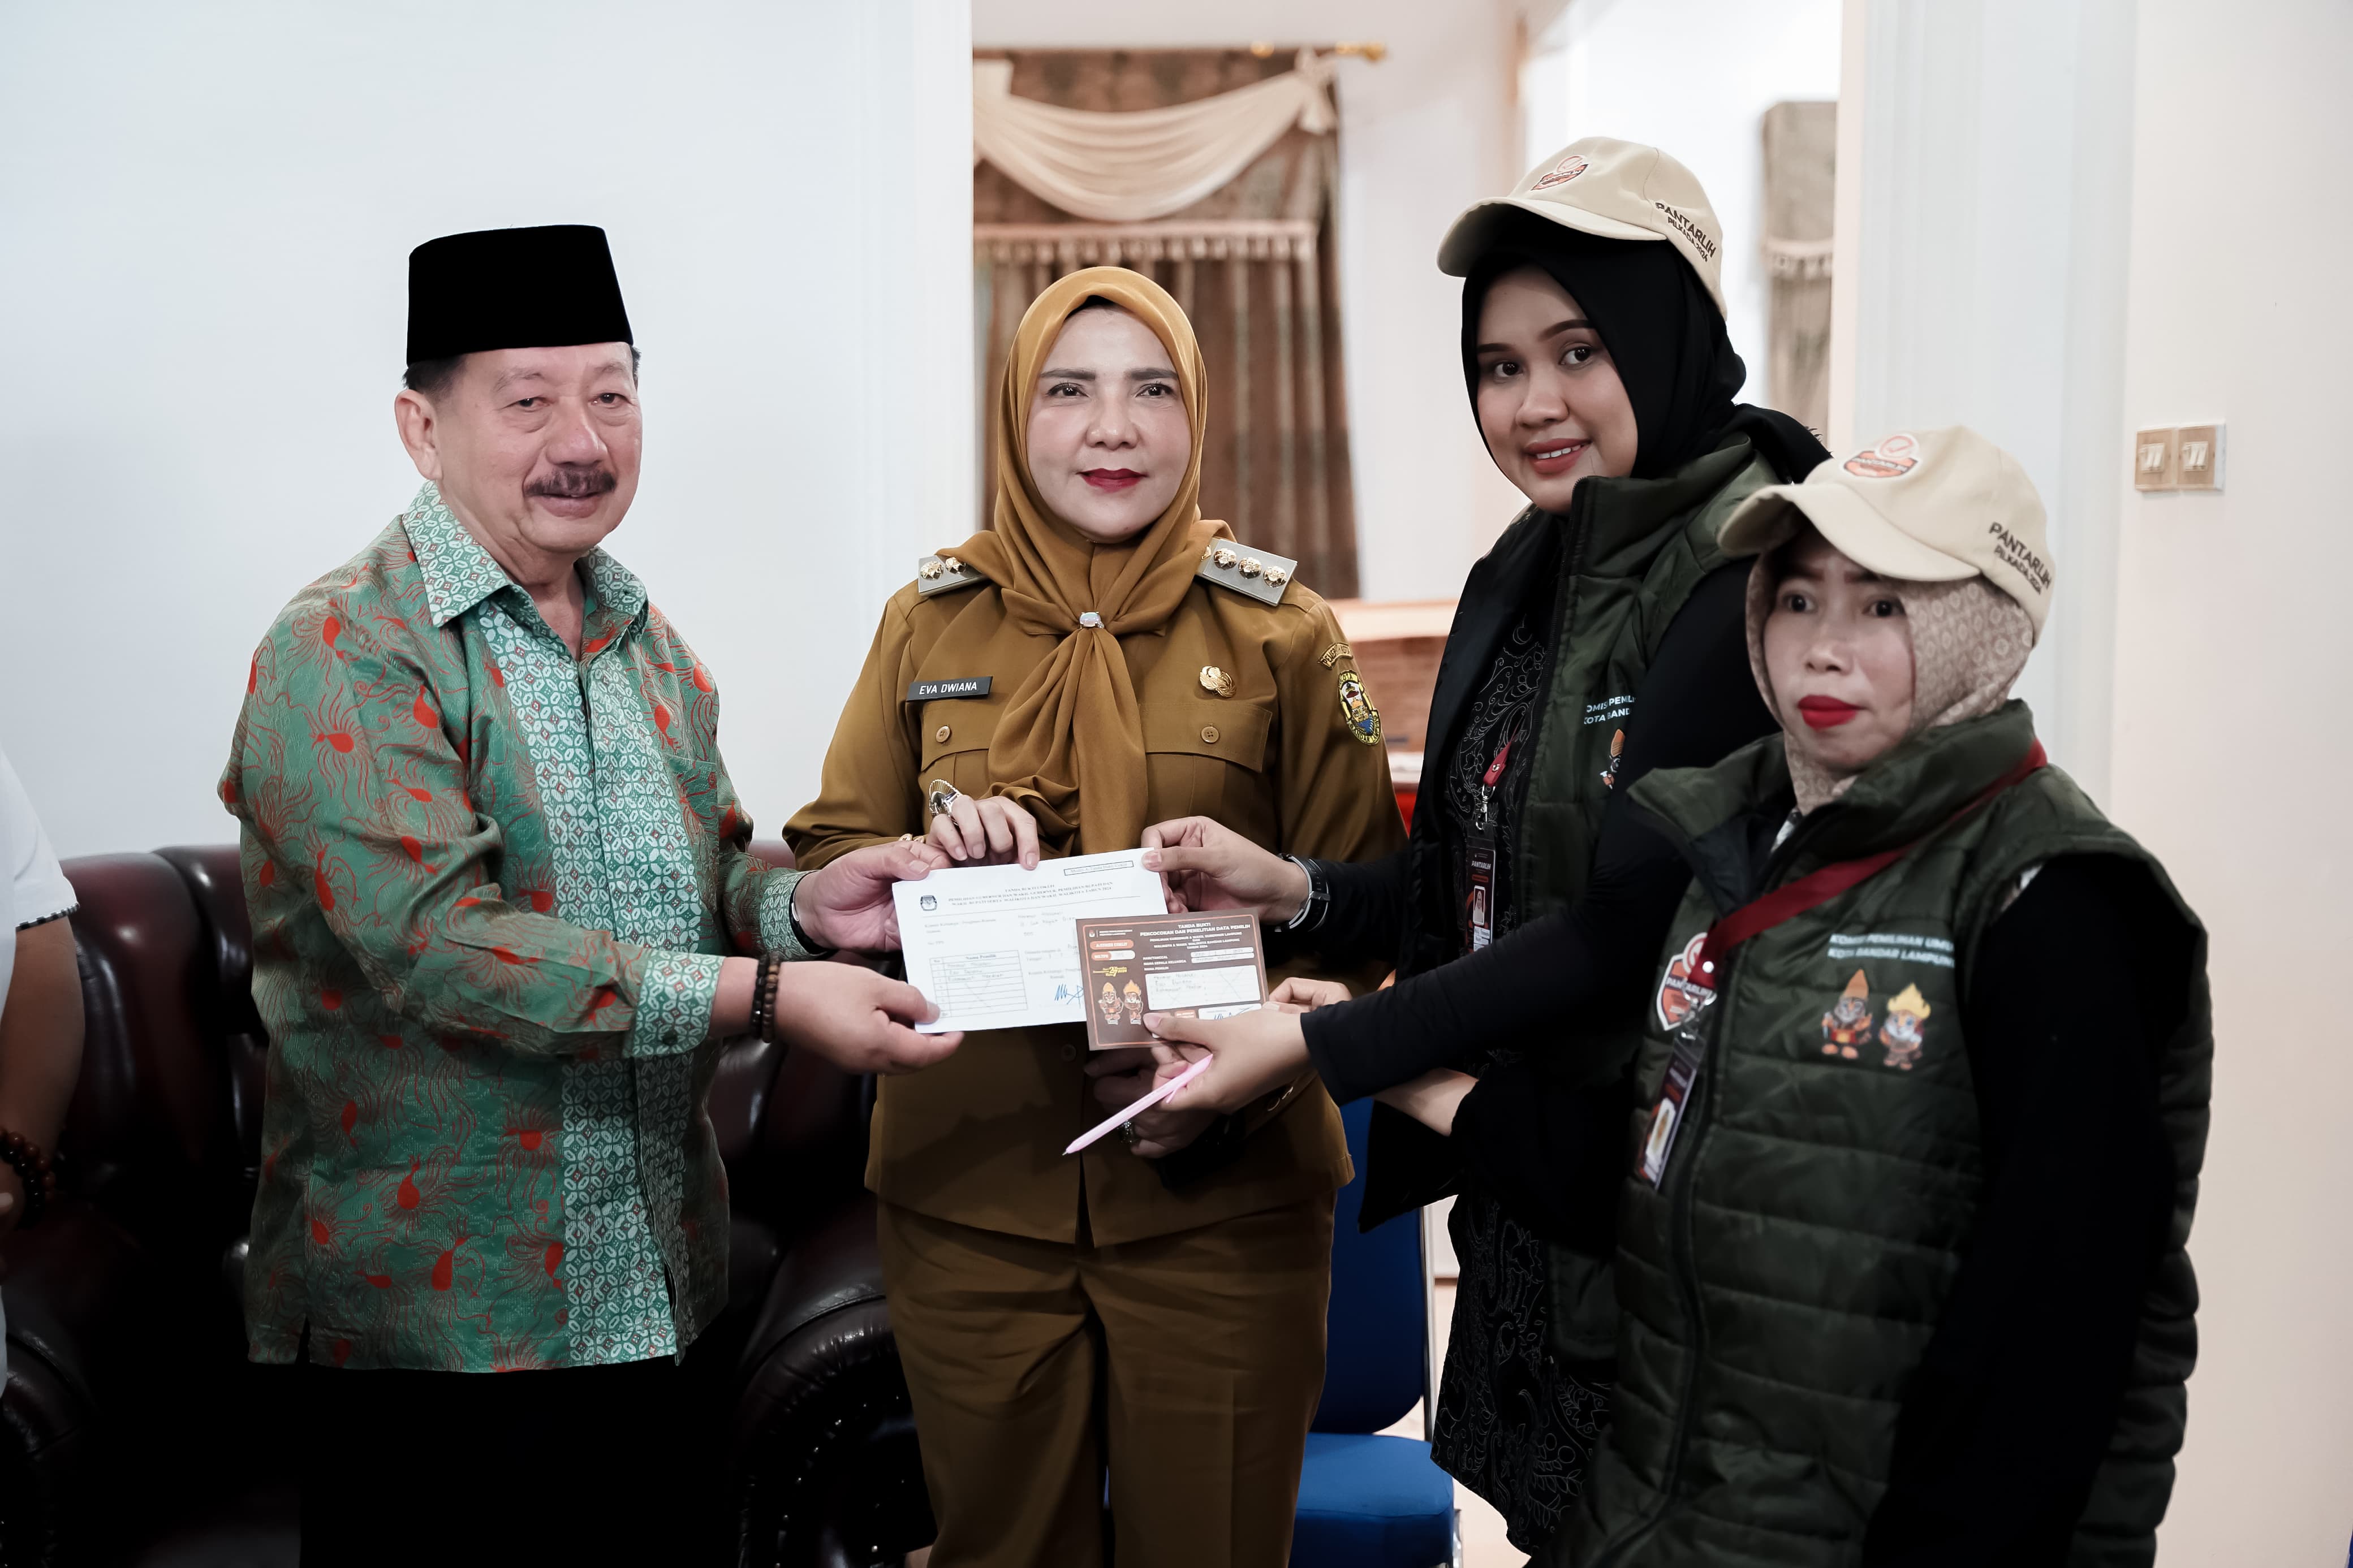 Wali Kota Bandar Lampung di-Coklit, Ajak Sukseskan Pemilu